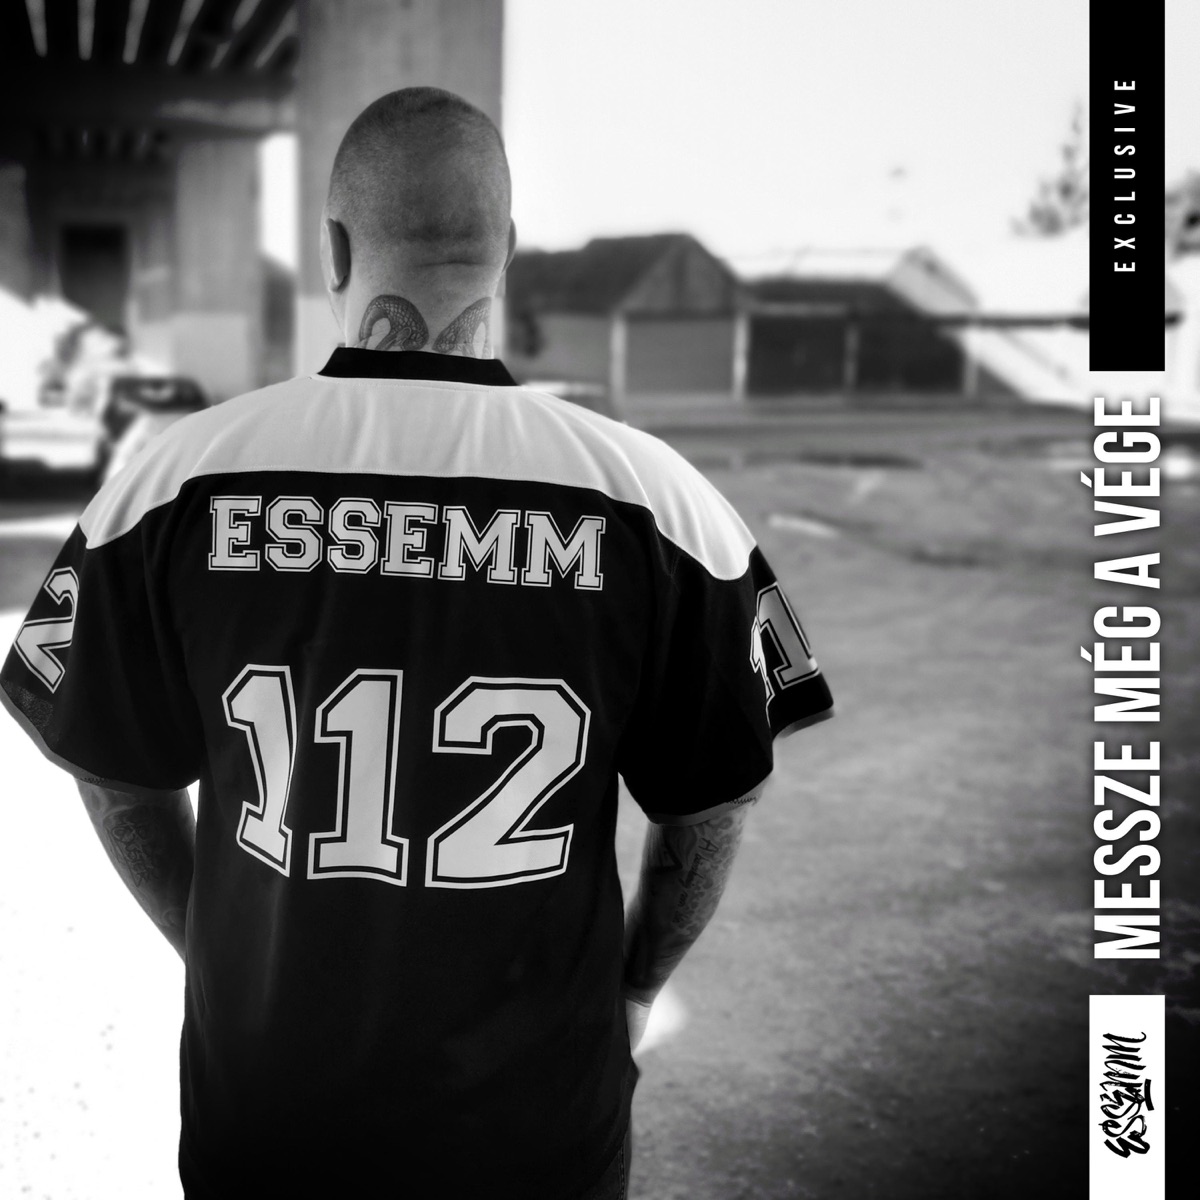 Messze még a vége - Single - Album by Essemm - Apple Music